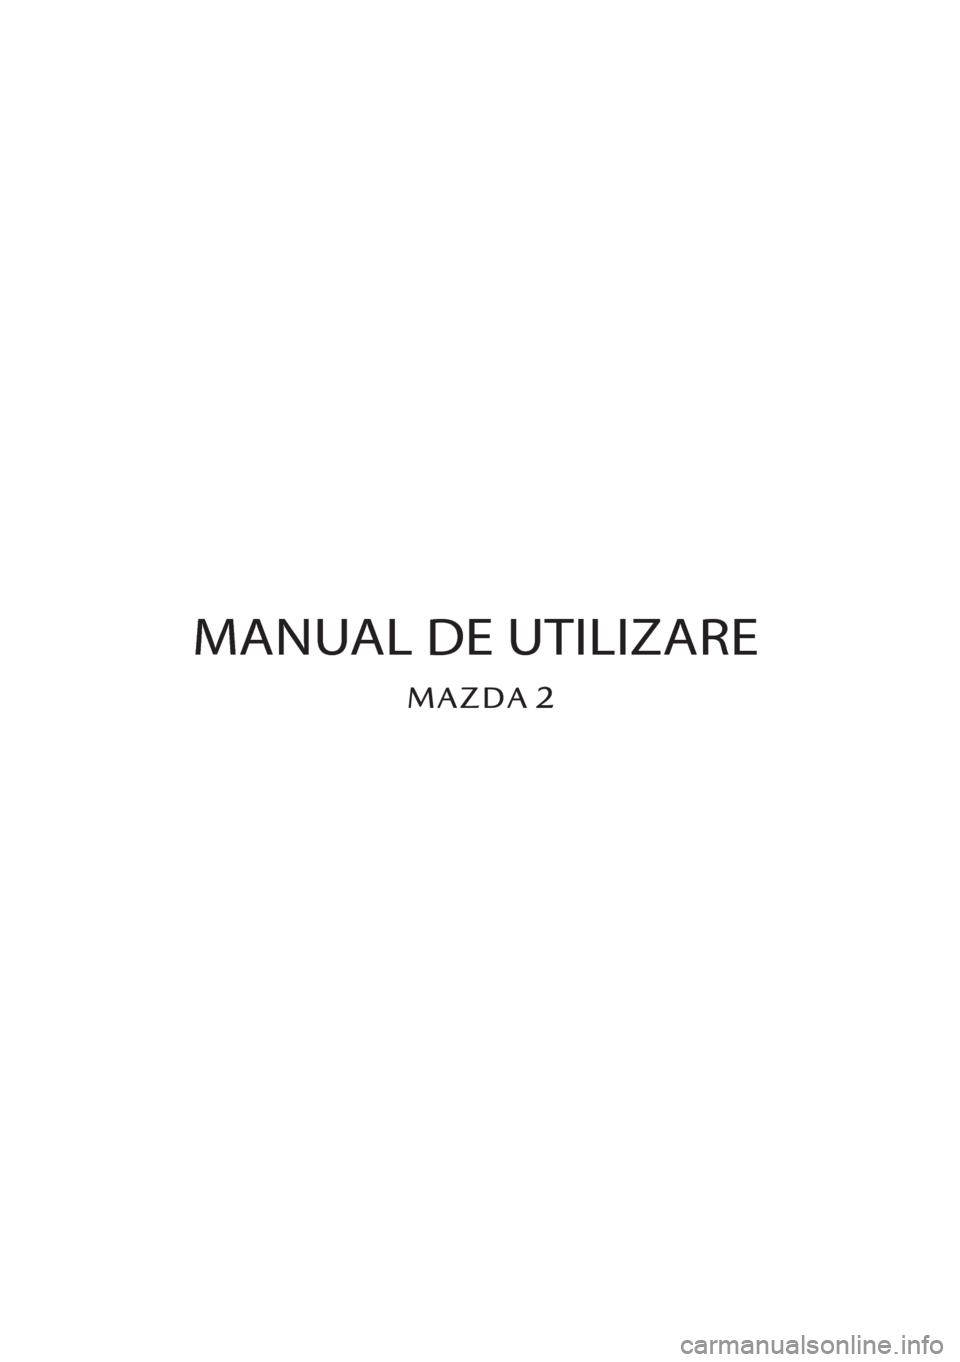 MAZDA MODEL 2 2019  Manualul de utilizare (in Romanian) MANUAL DE UTILIZARE 